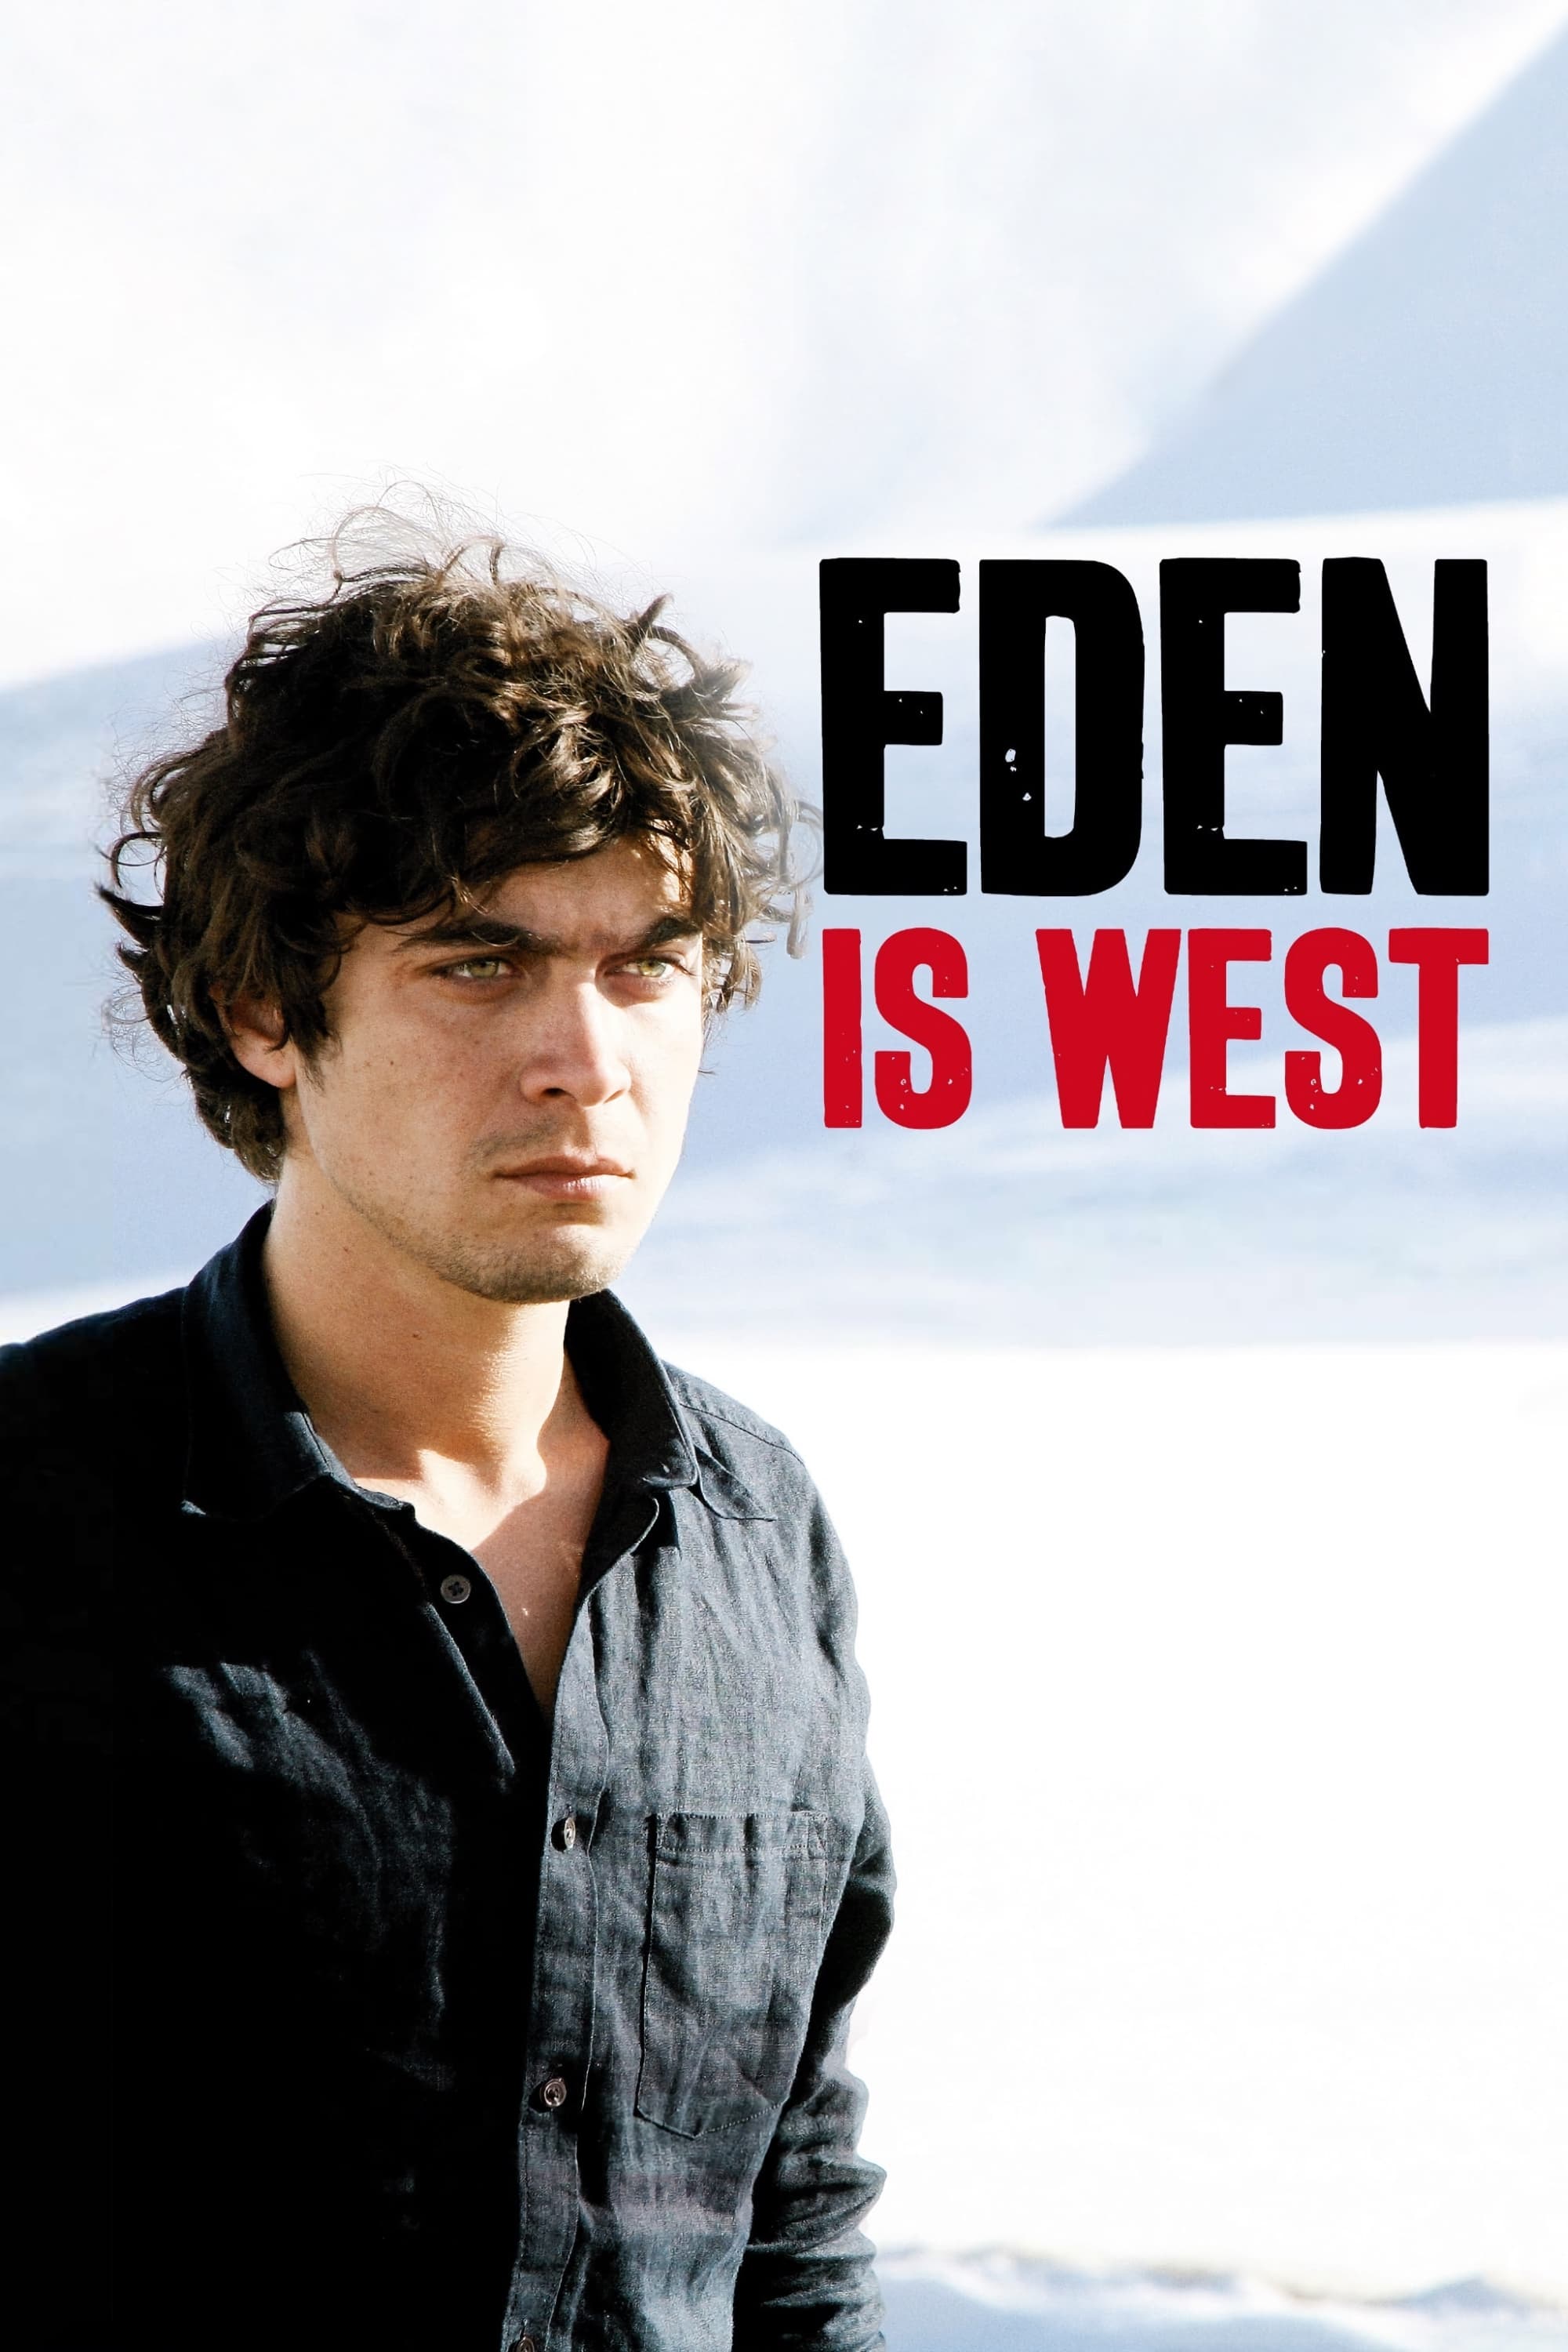 Eden Is West (2009)